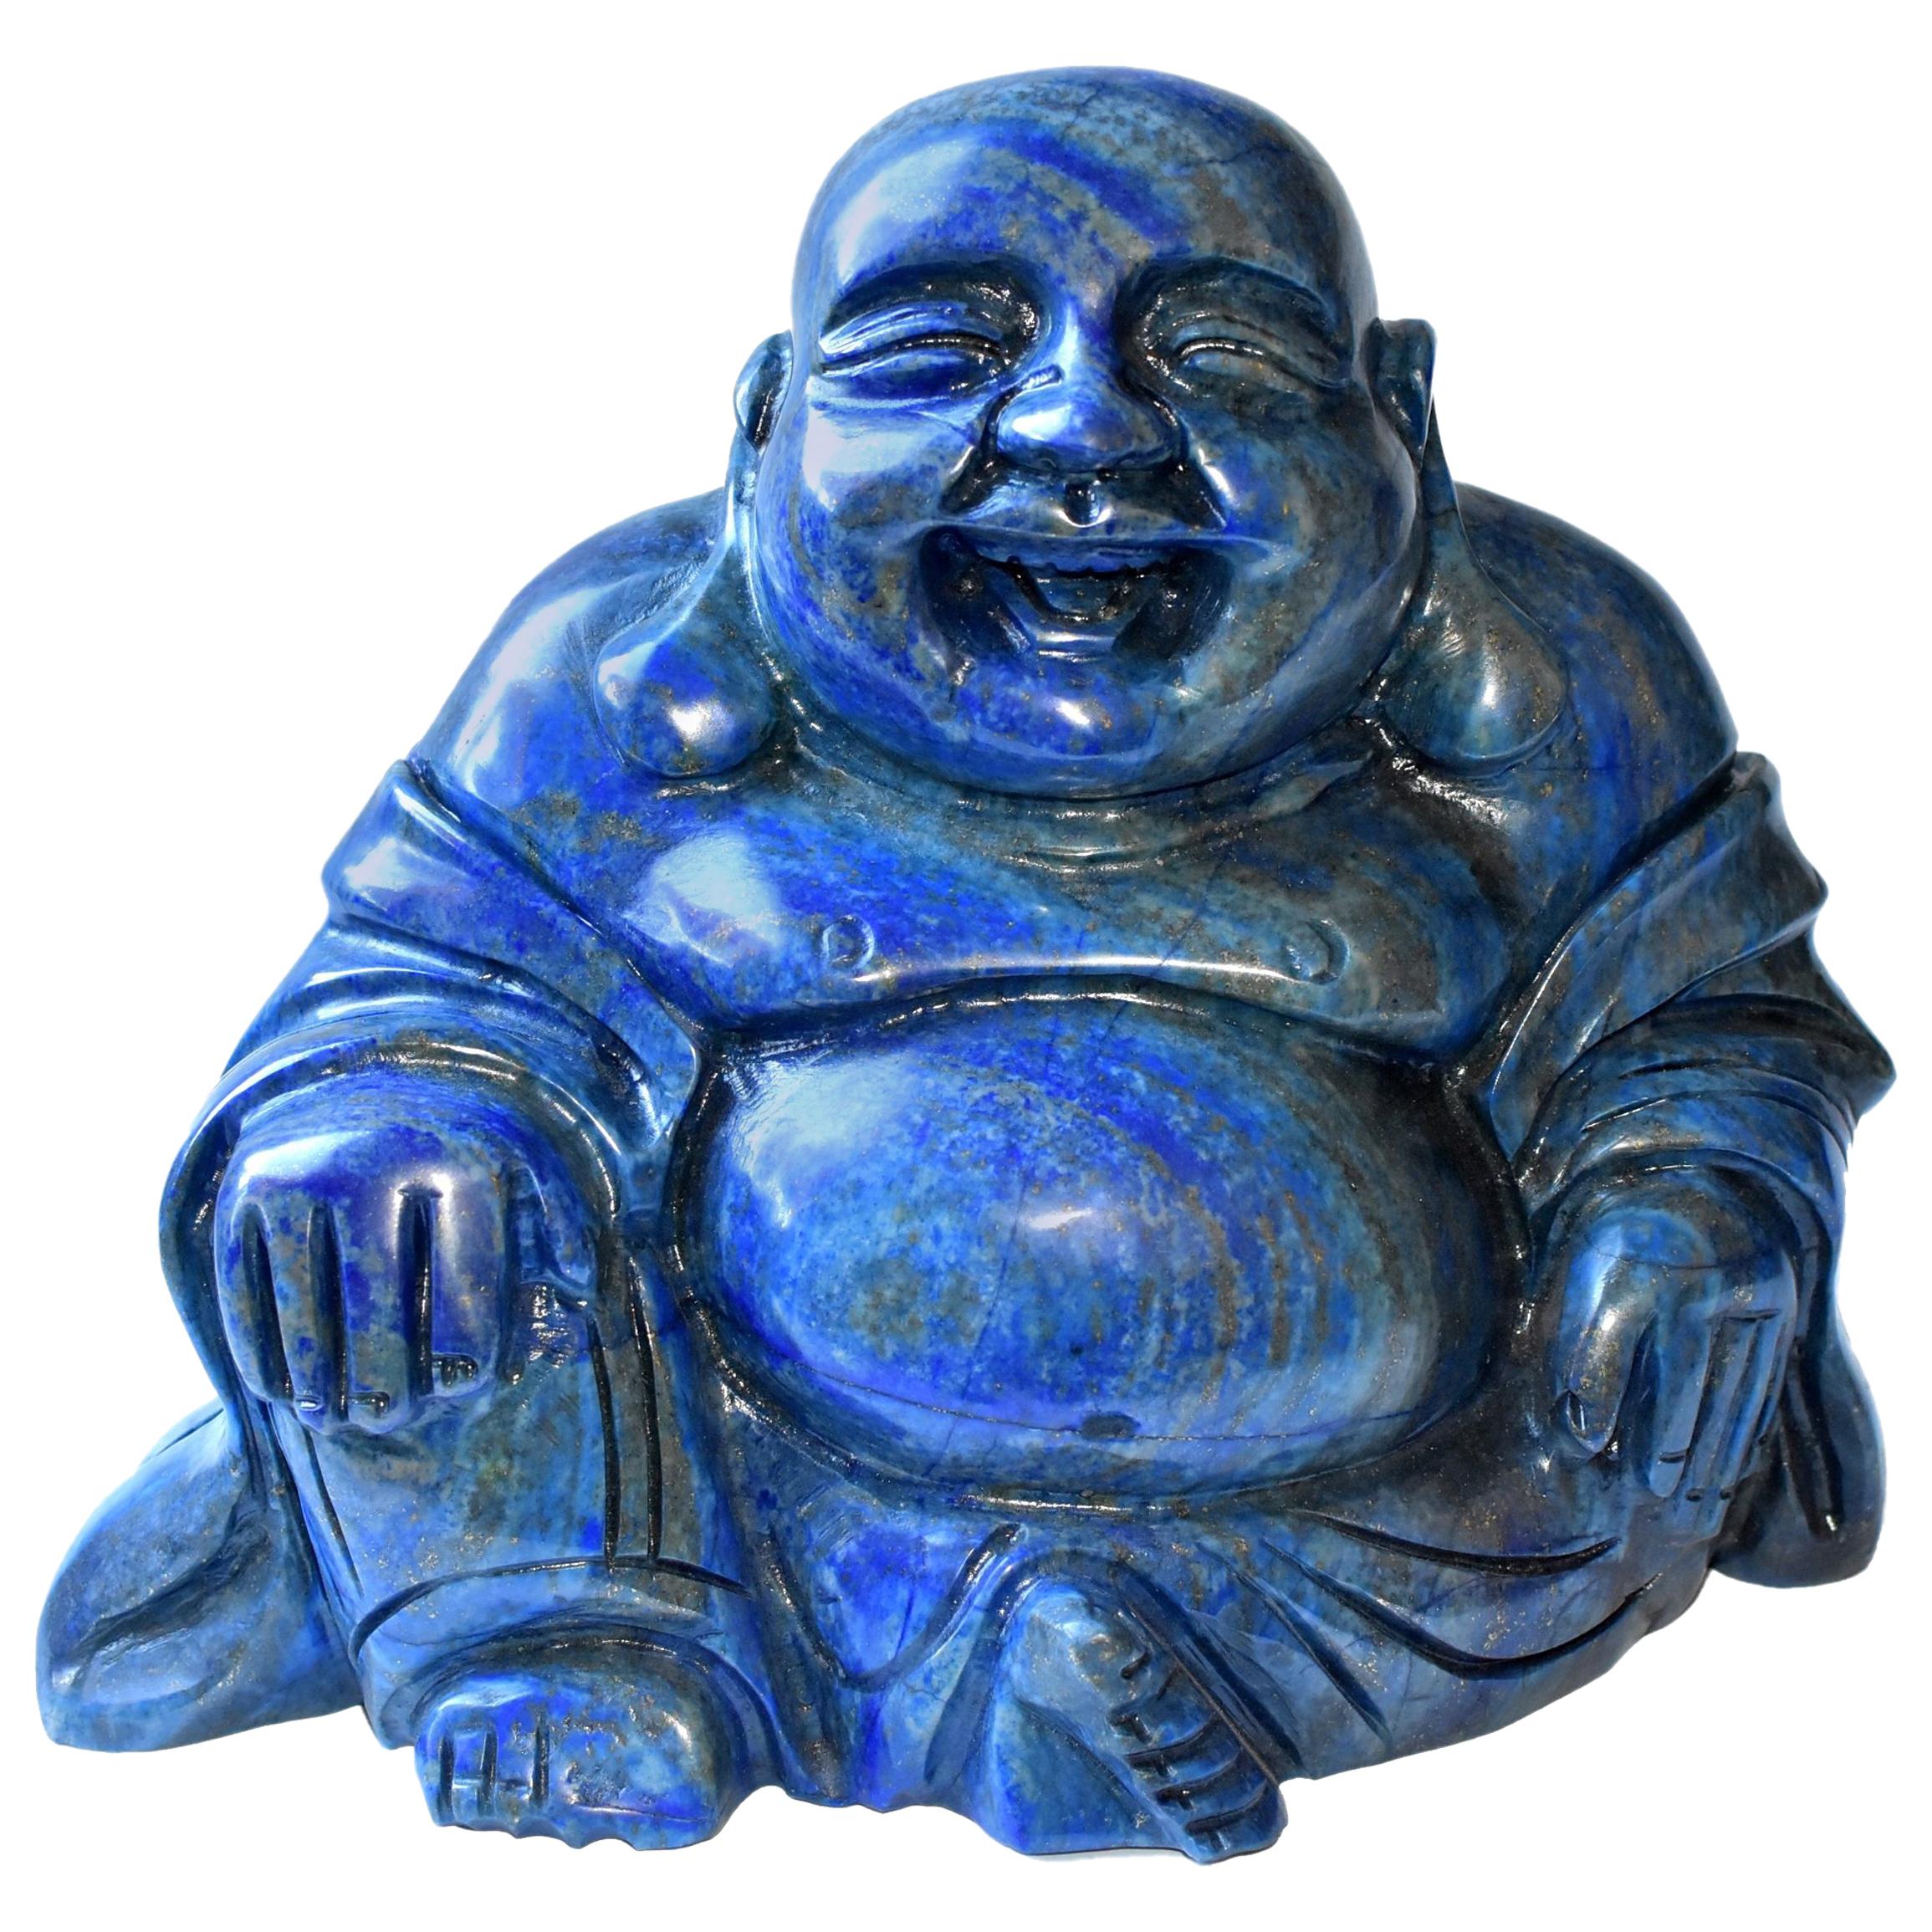 Riesige 14::4 Pfund natürlichen Lapislazuli glücklich Buddha-Statue